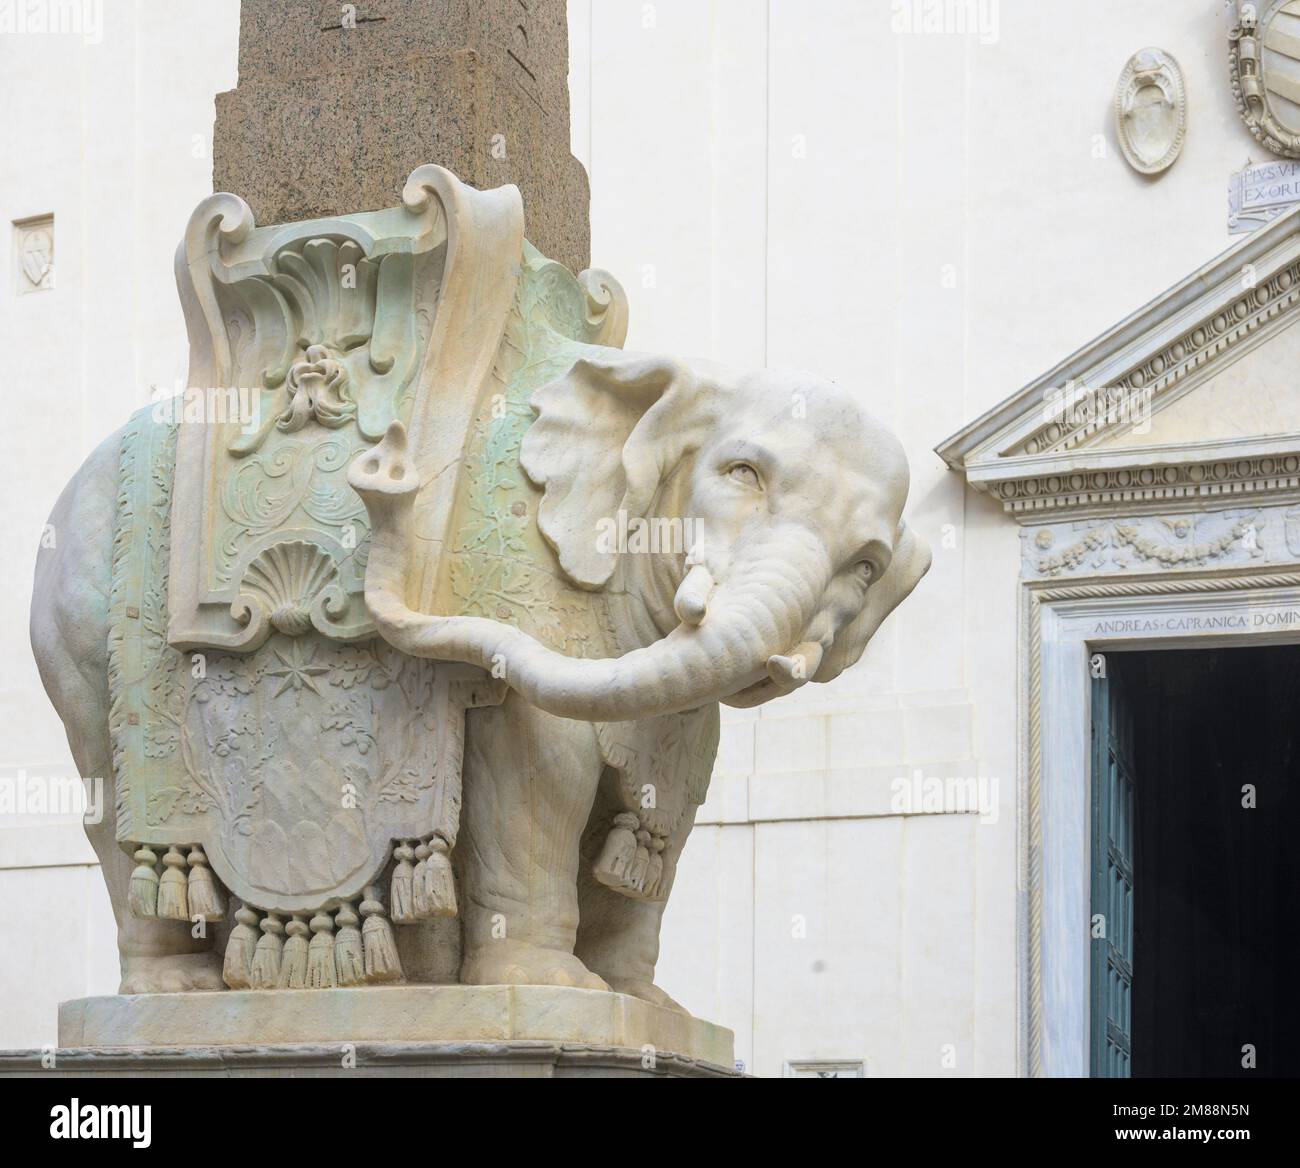 Bernini's Elephant, Rome, Italy Stock Photo